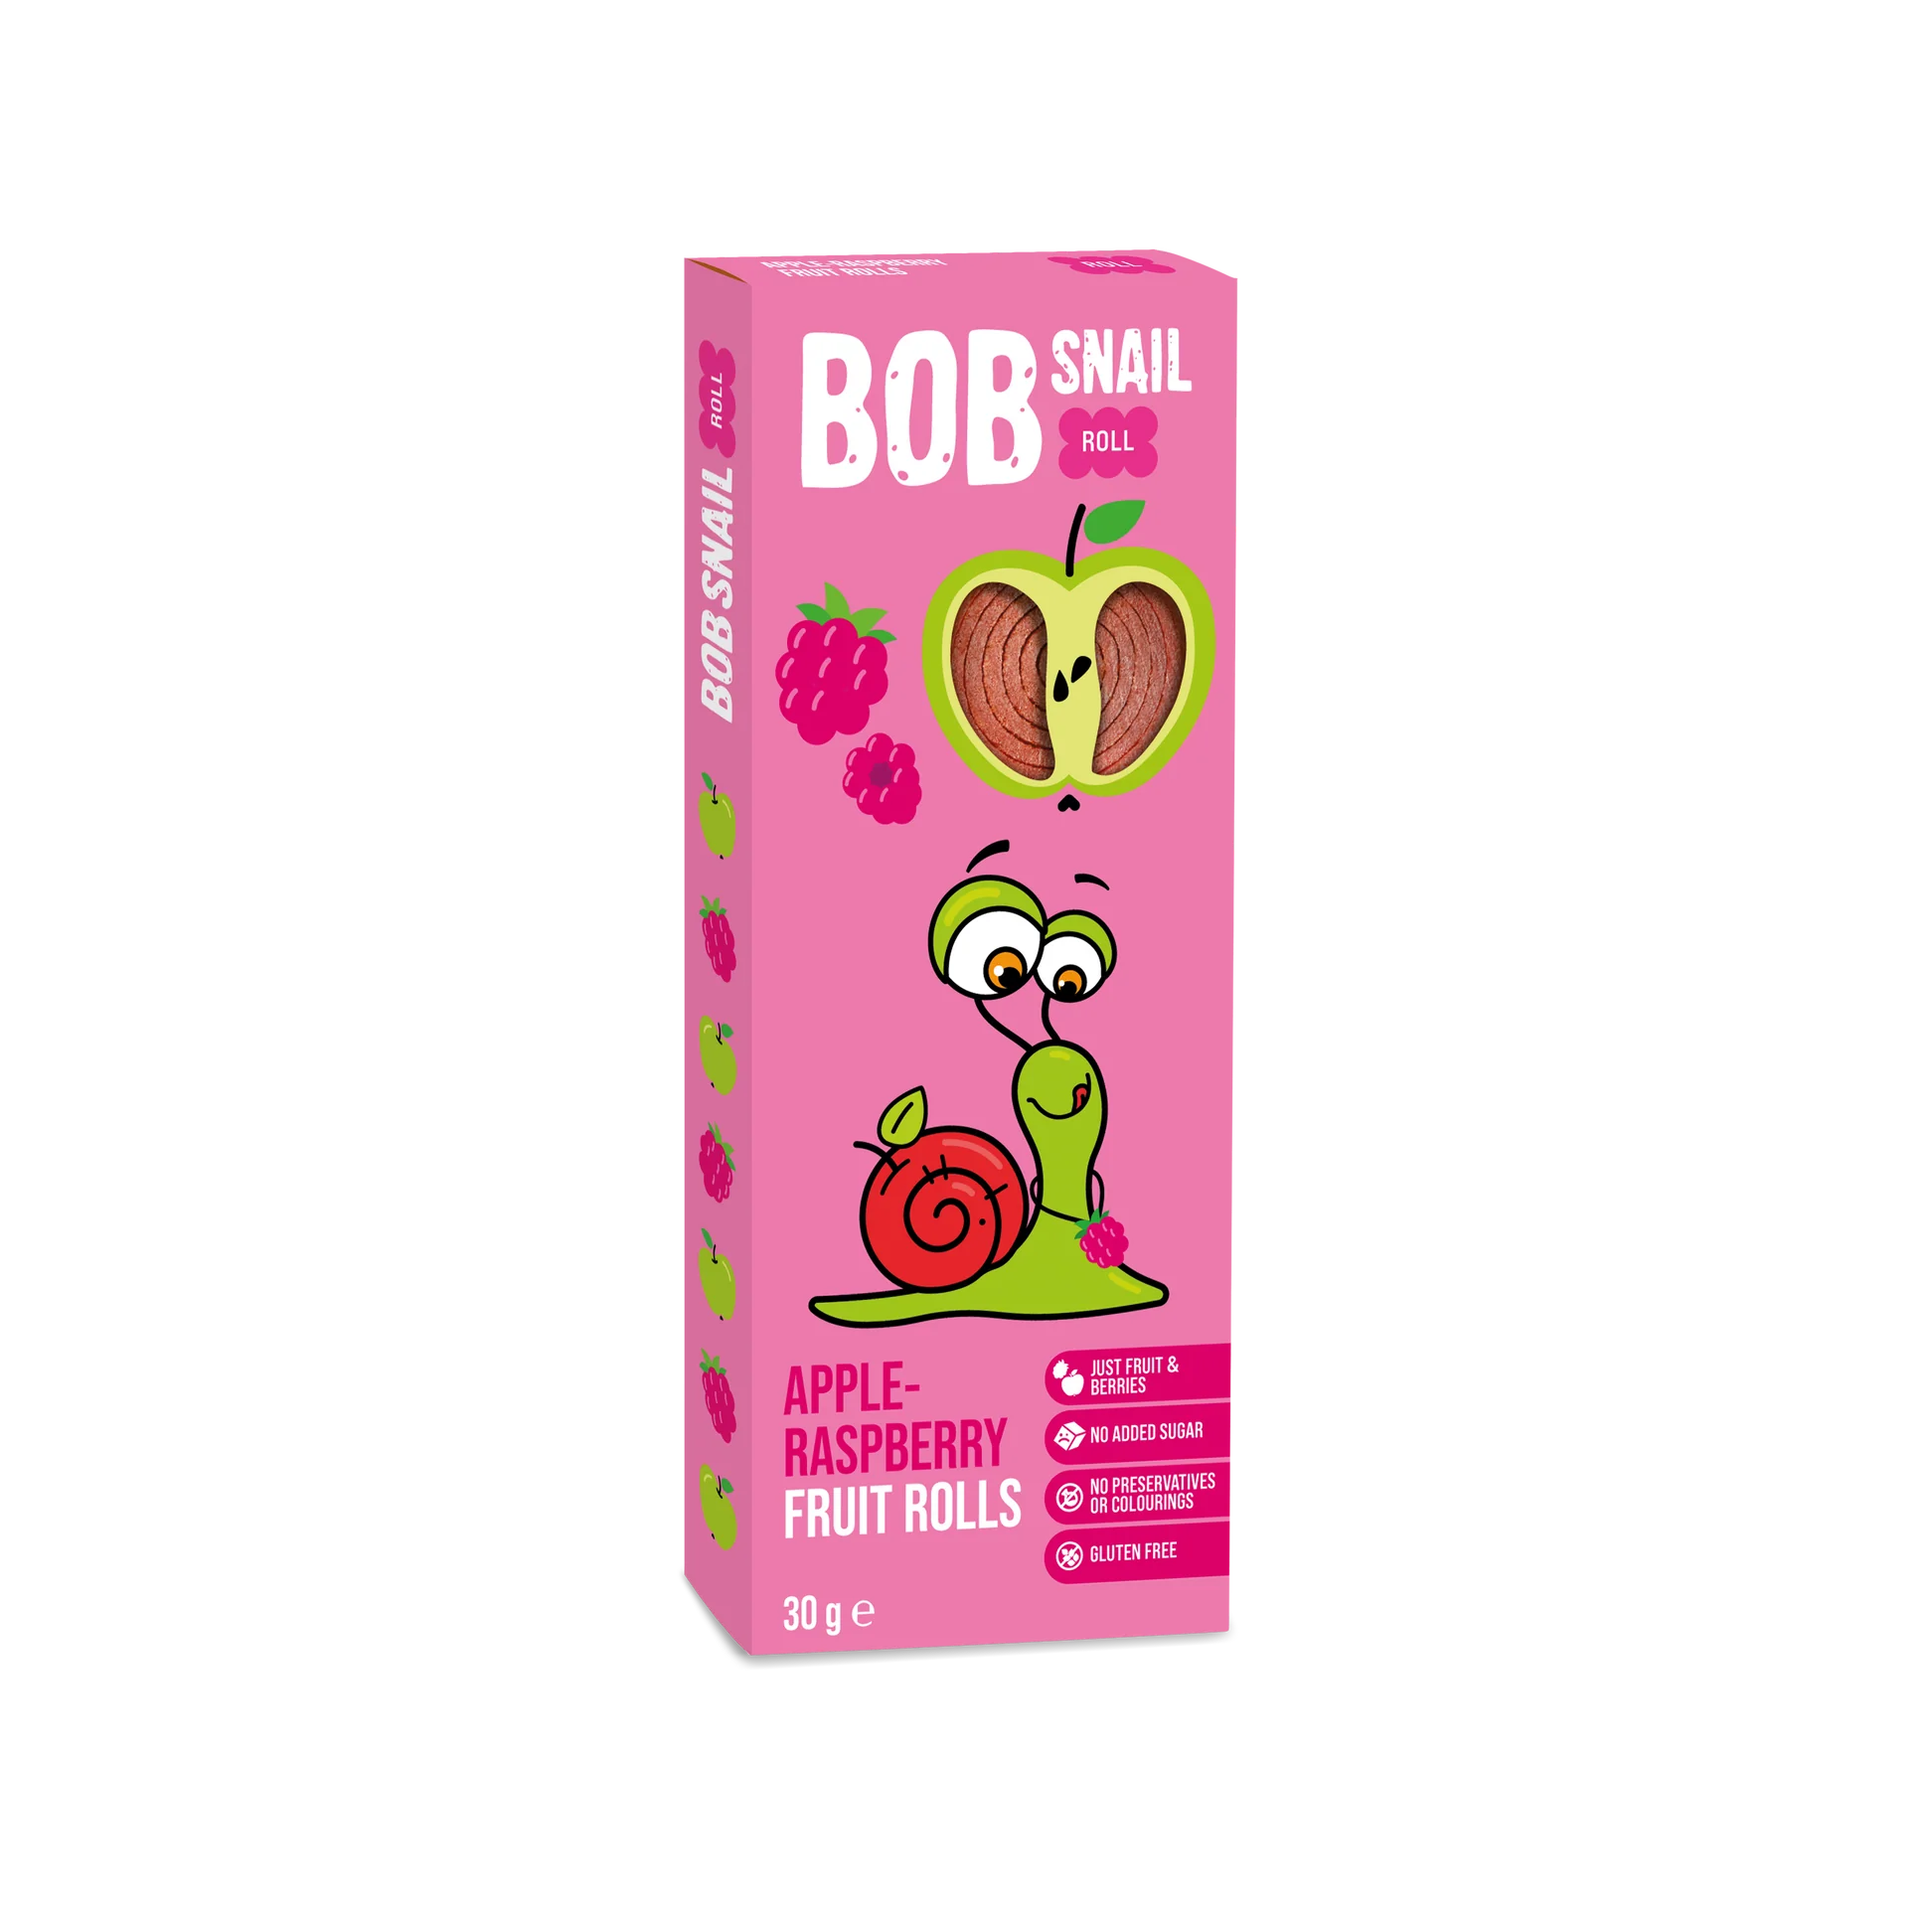 Bob Snail Fruit Rolls Apple Raspberry Pack of 24x30g (European)